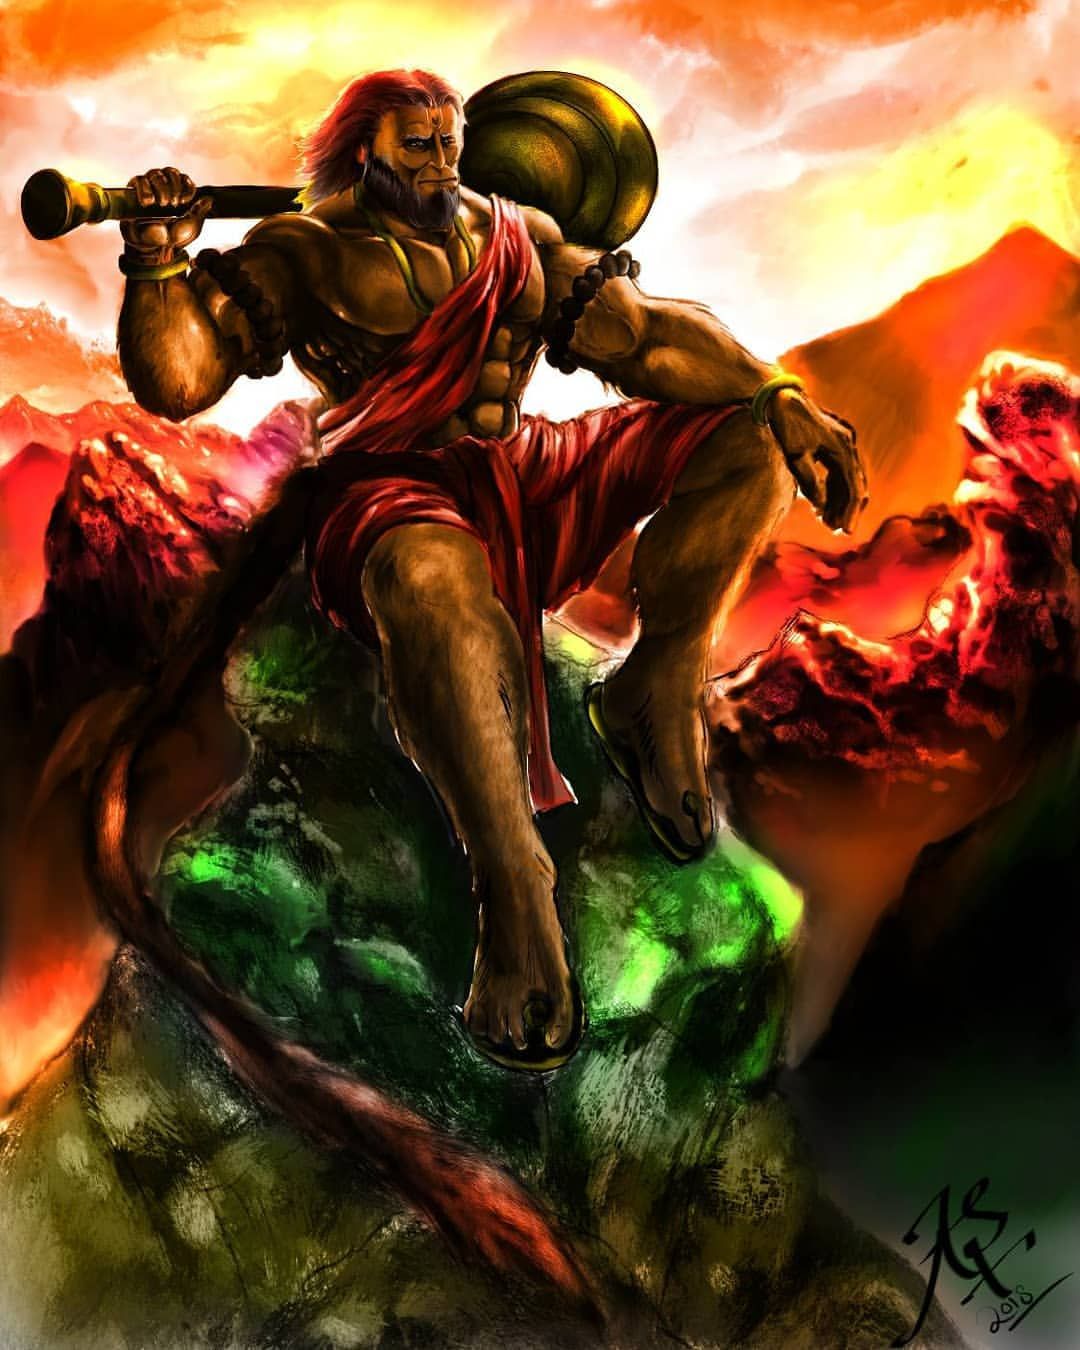 Warrior Bajrang Bali Hanuman - 1080x1350 Wallpaper 